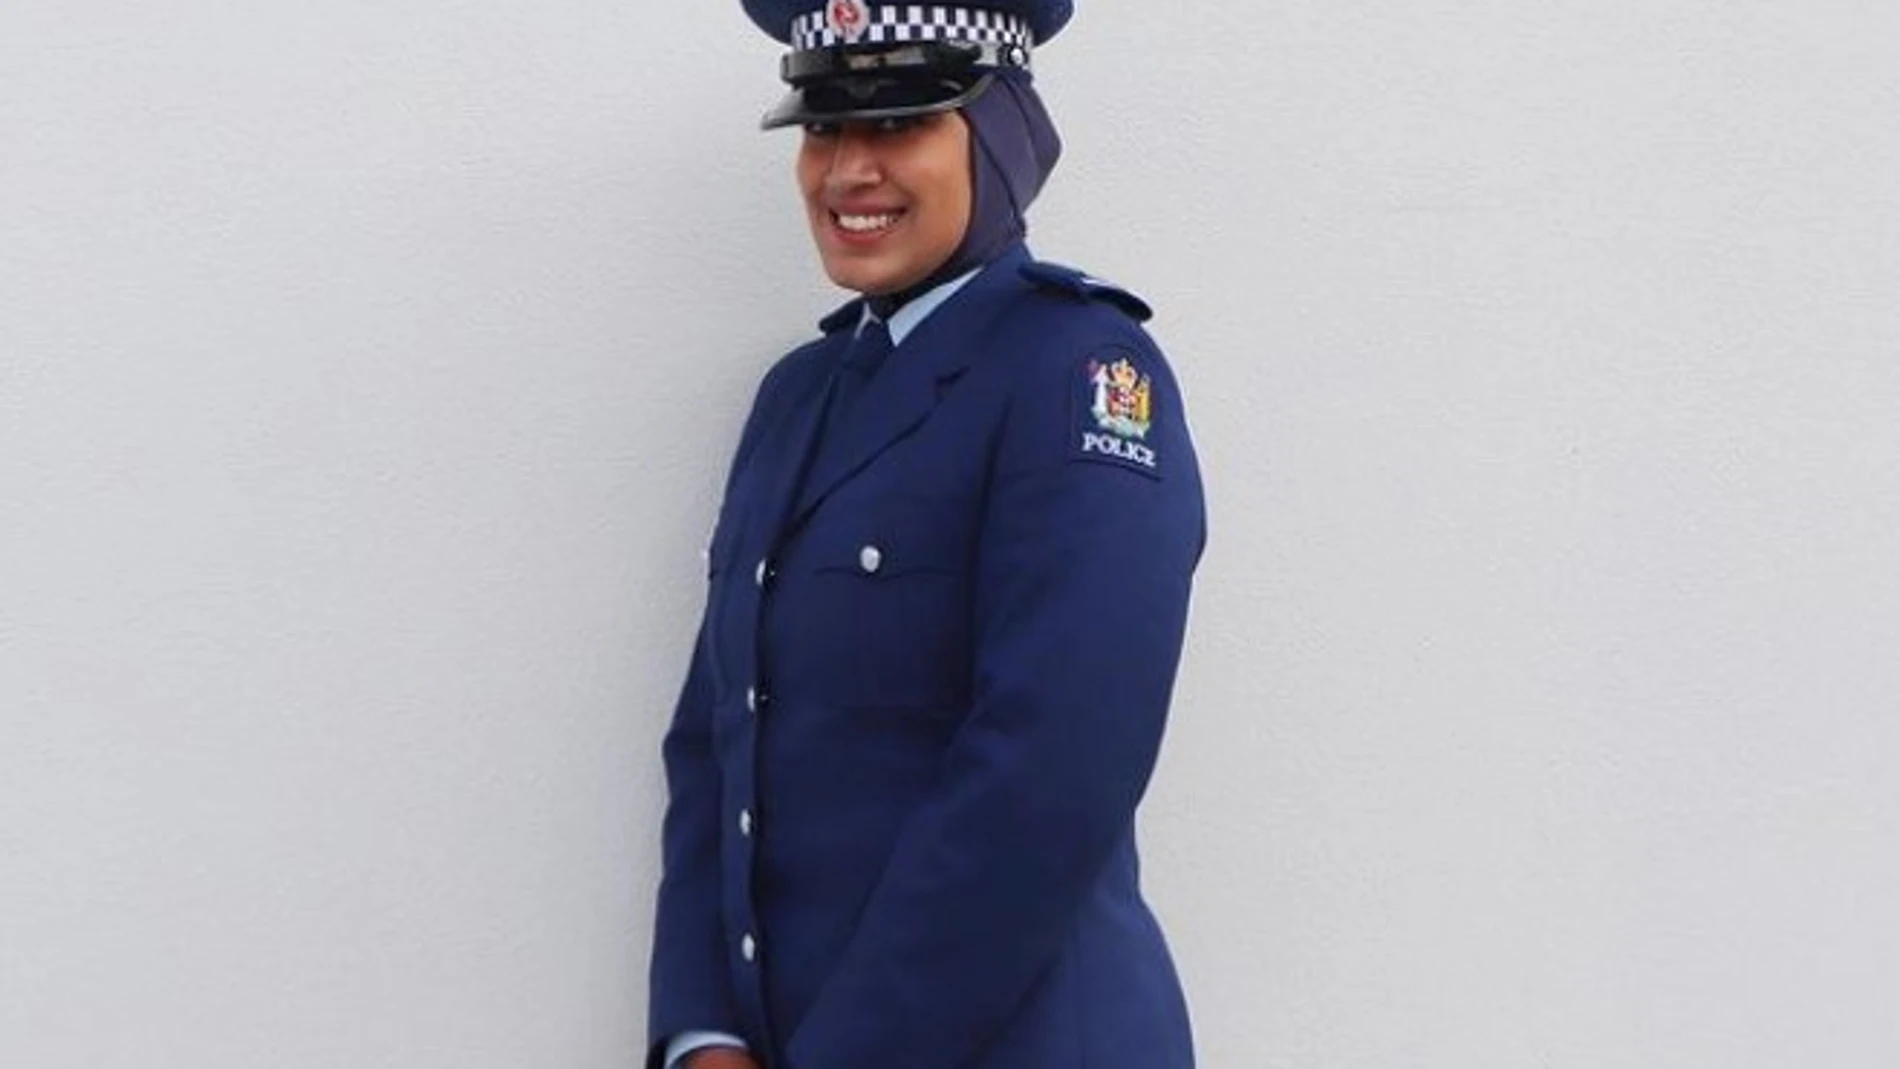 Imagen del uniforme policial con hiyab publicada en la cuenta de Instagram de la Policía de Nueva Zelanda